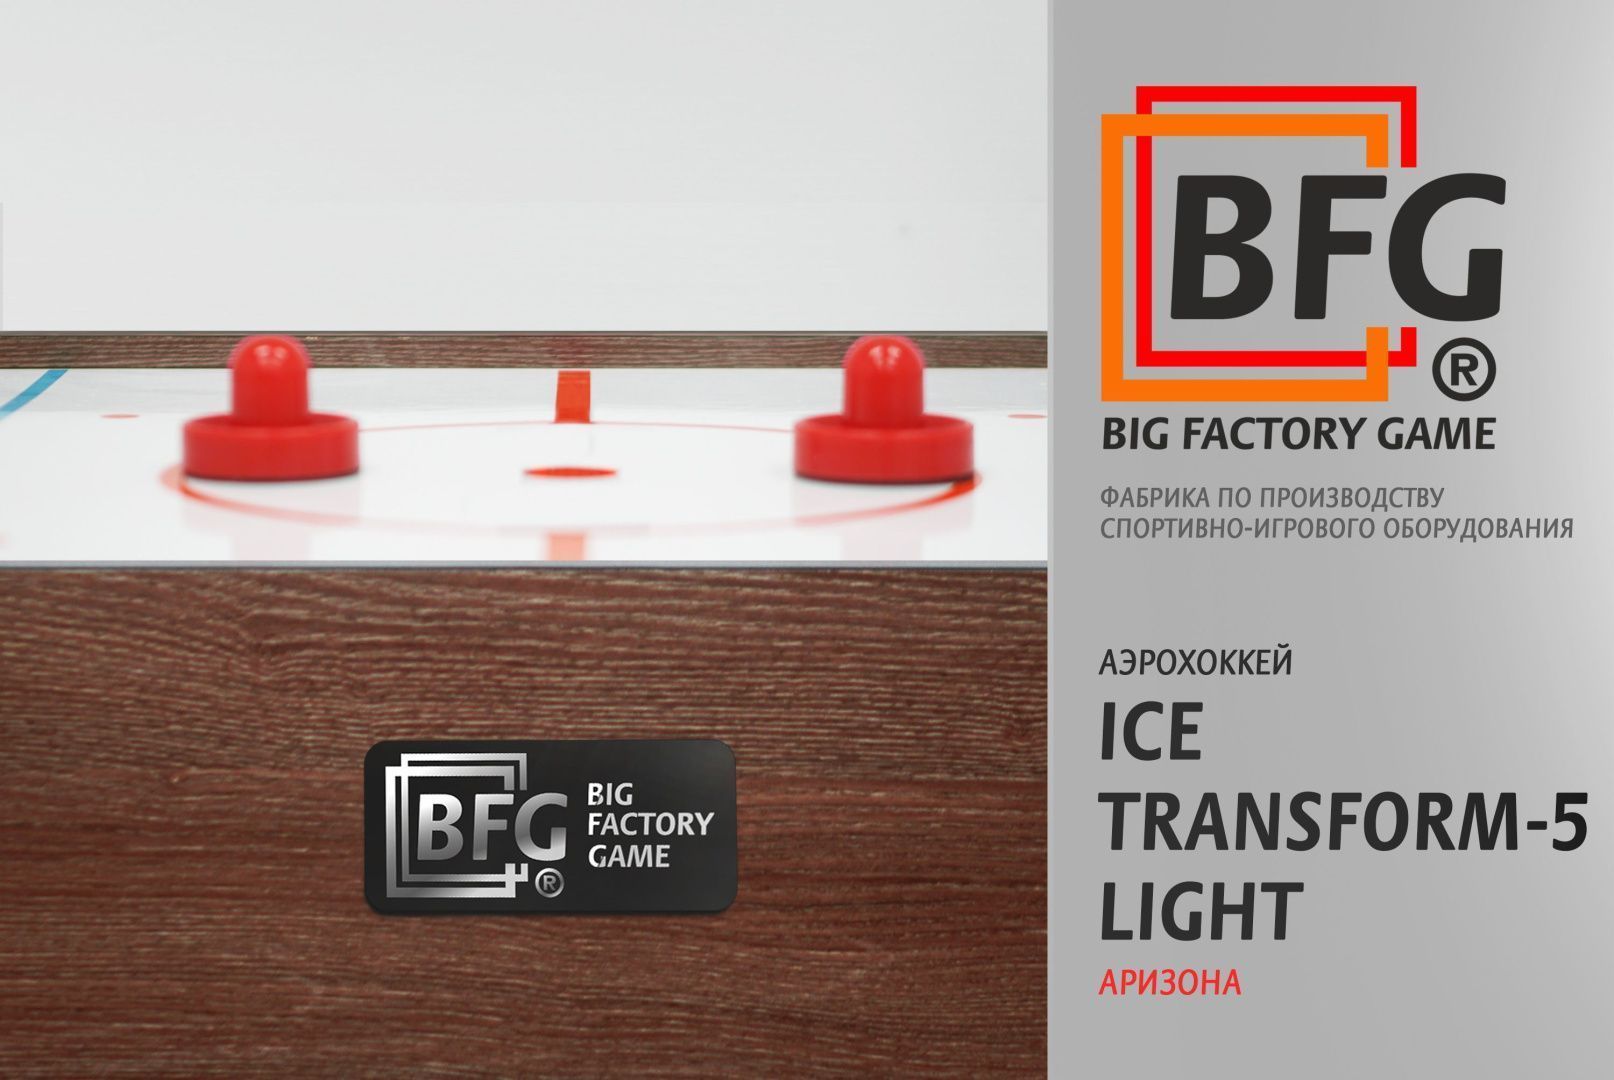 Аэрохоккей. BFG Ice Transform 5 (Аризона) Light